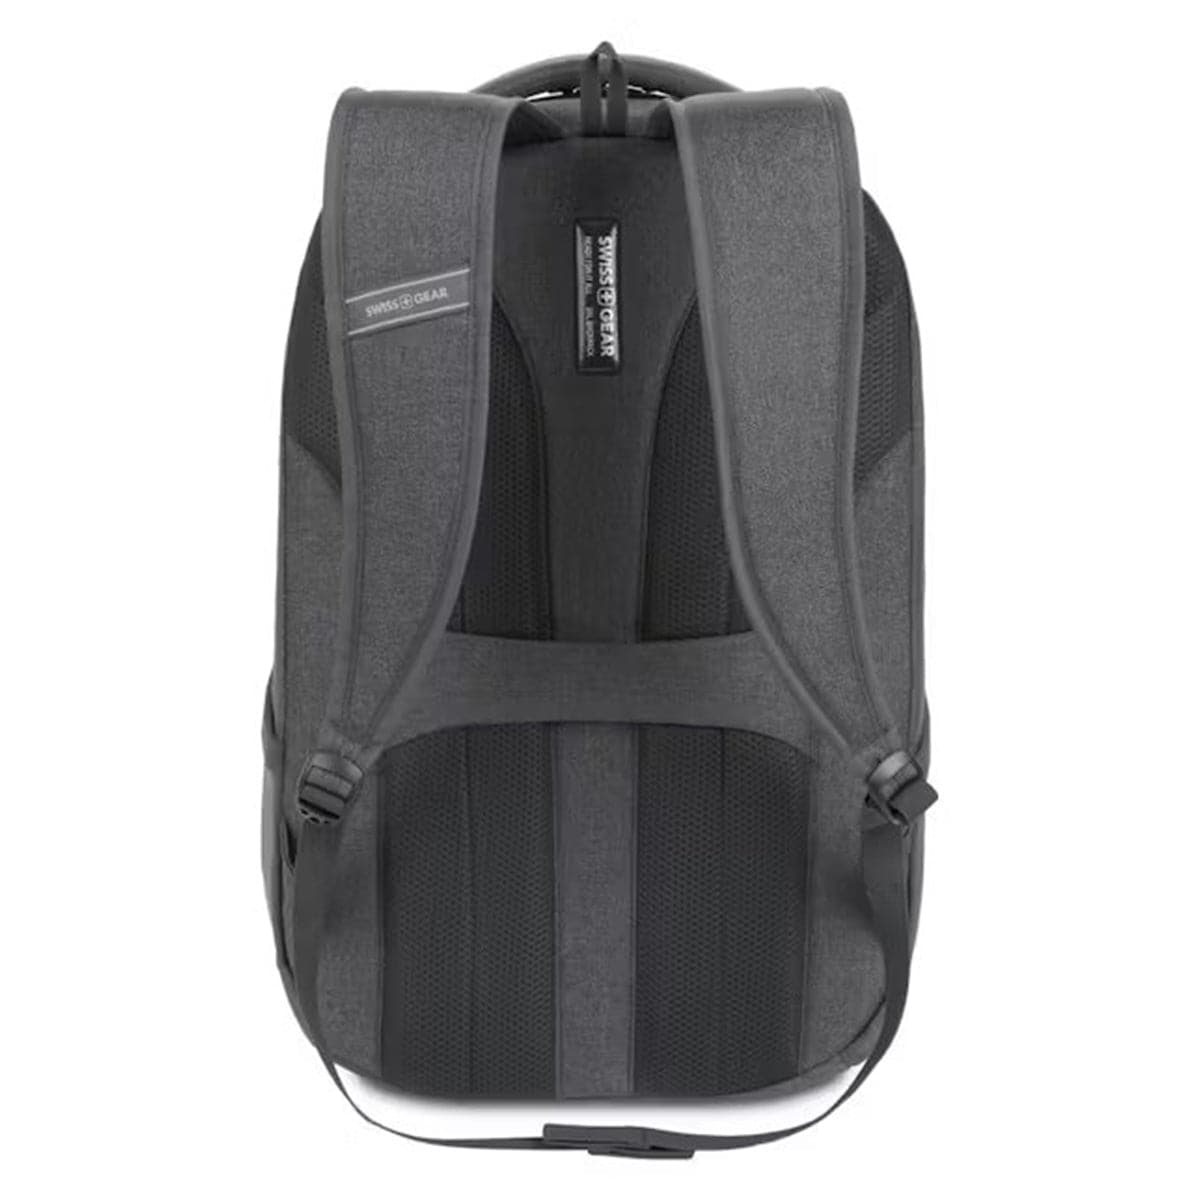 SwissGear 8175 16" Laptop Backpack